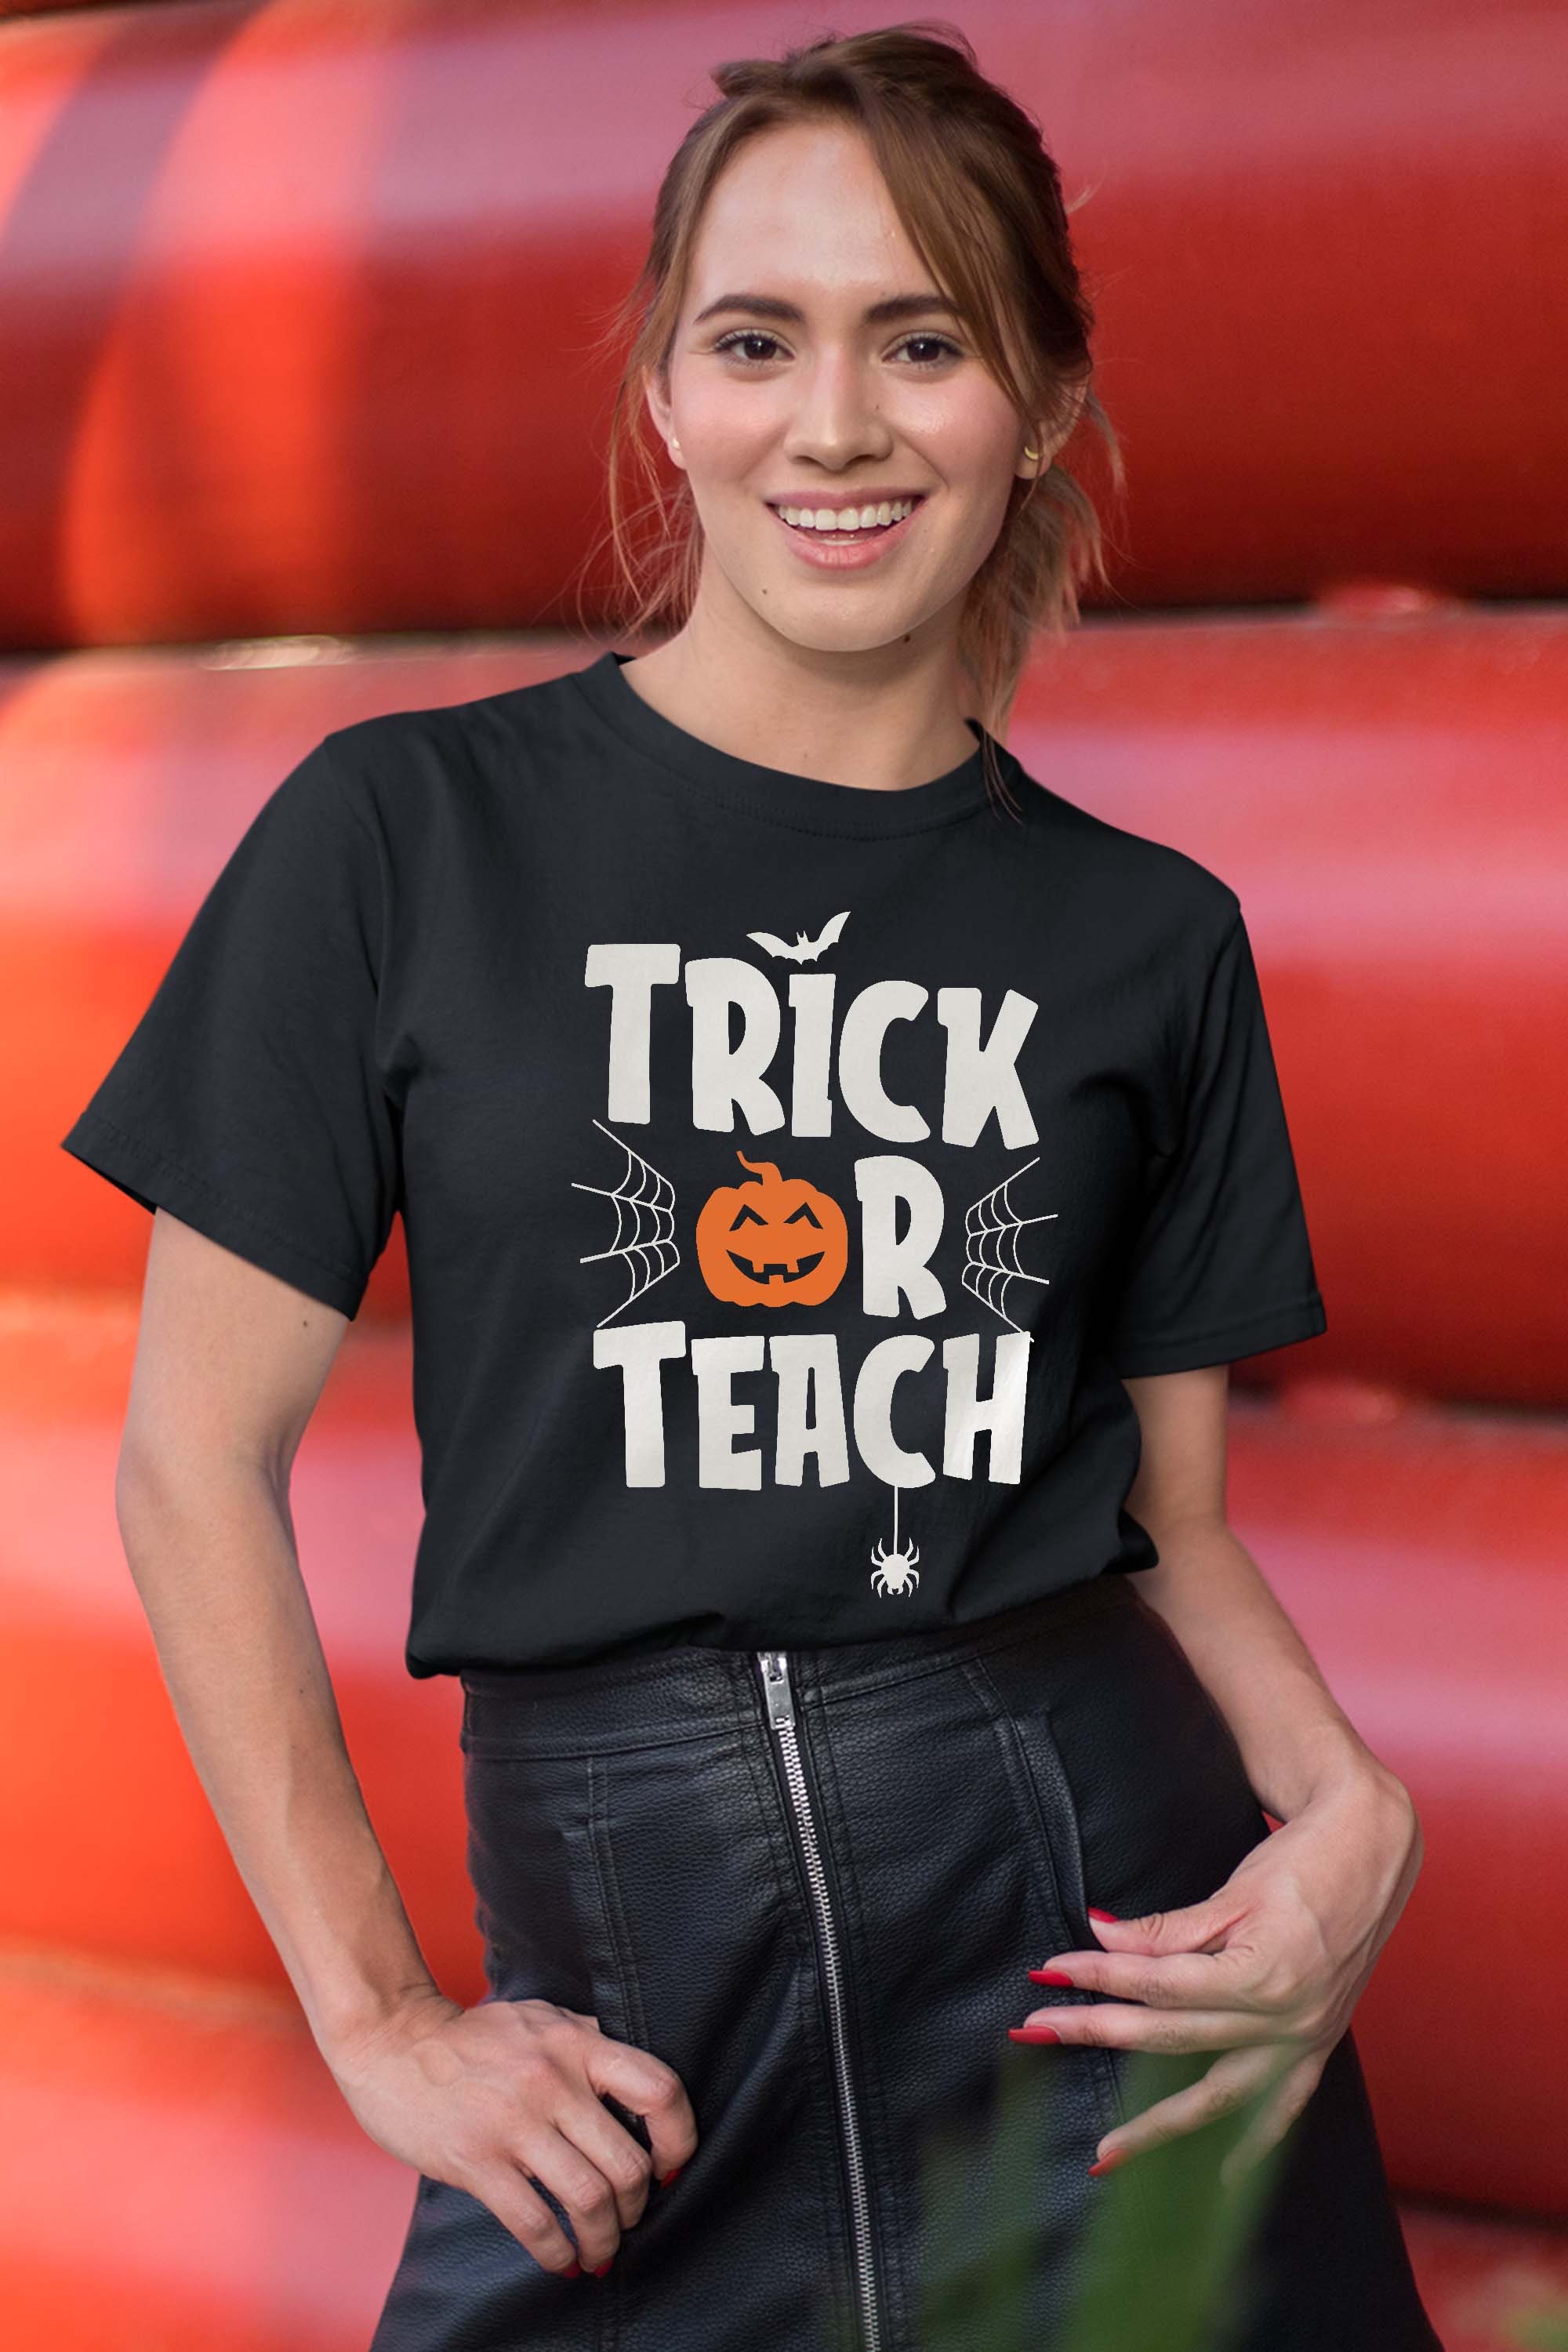 Trick or Teach Shirt Funny Women Teacher Halloween Costume T-Shirt